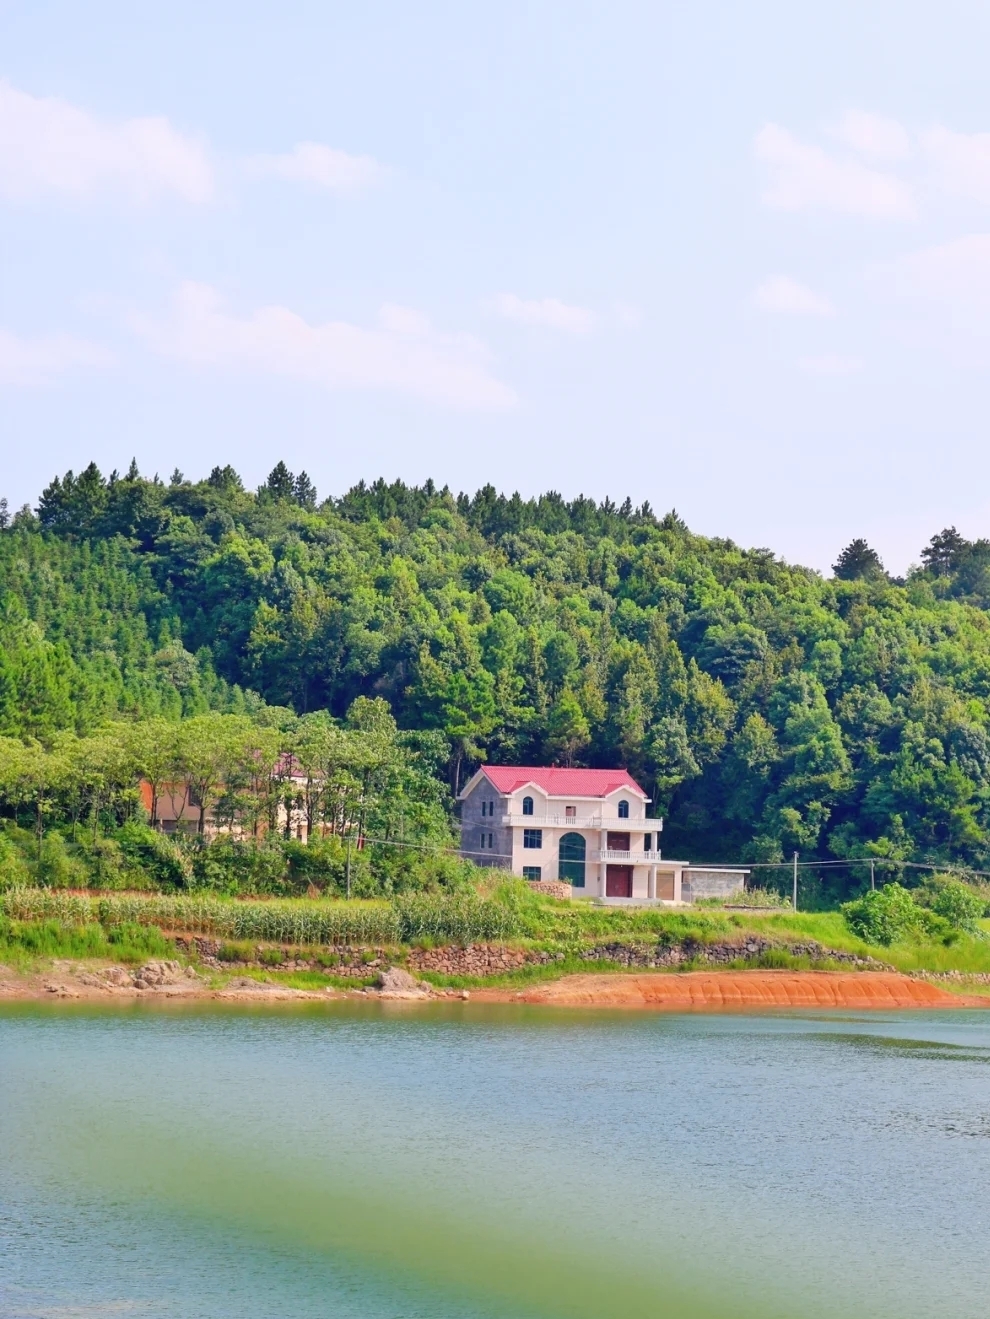 娄底小众旅游指南 第6站:神龙湖